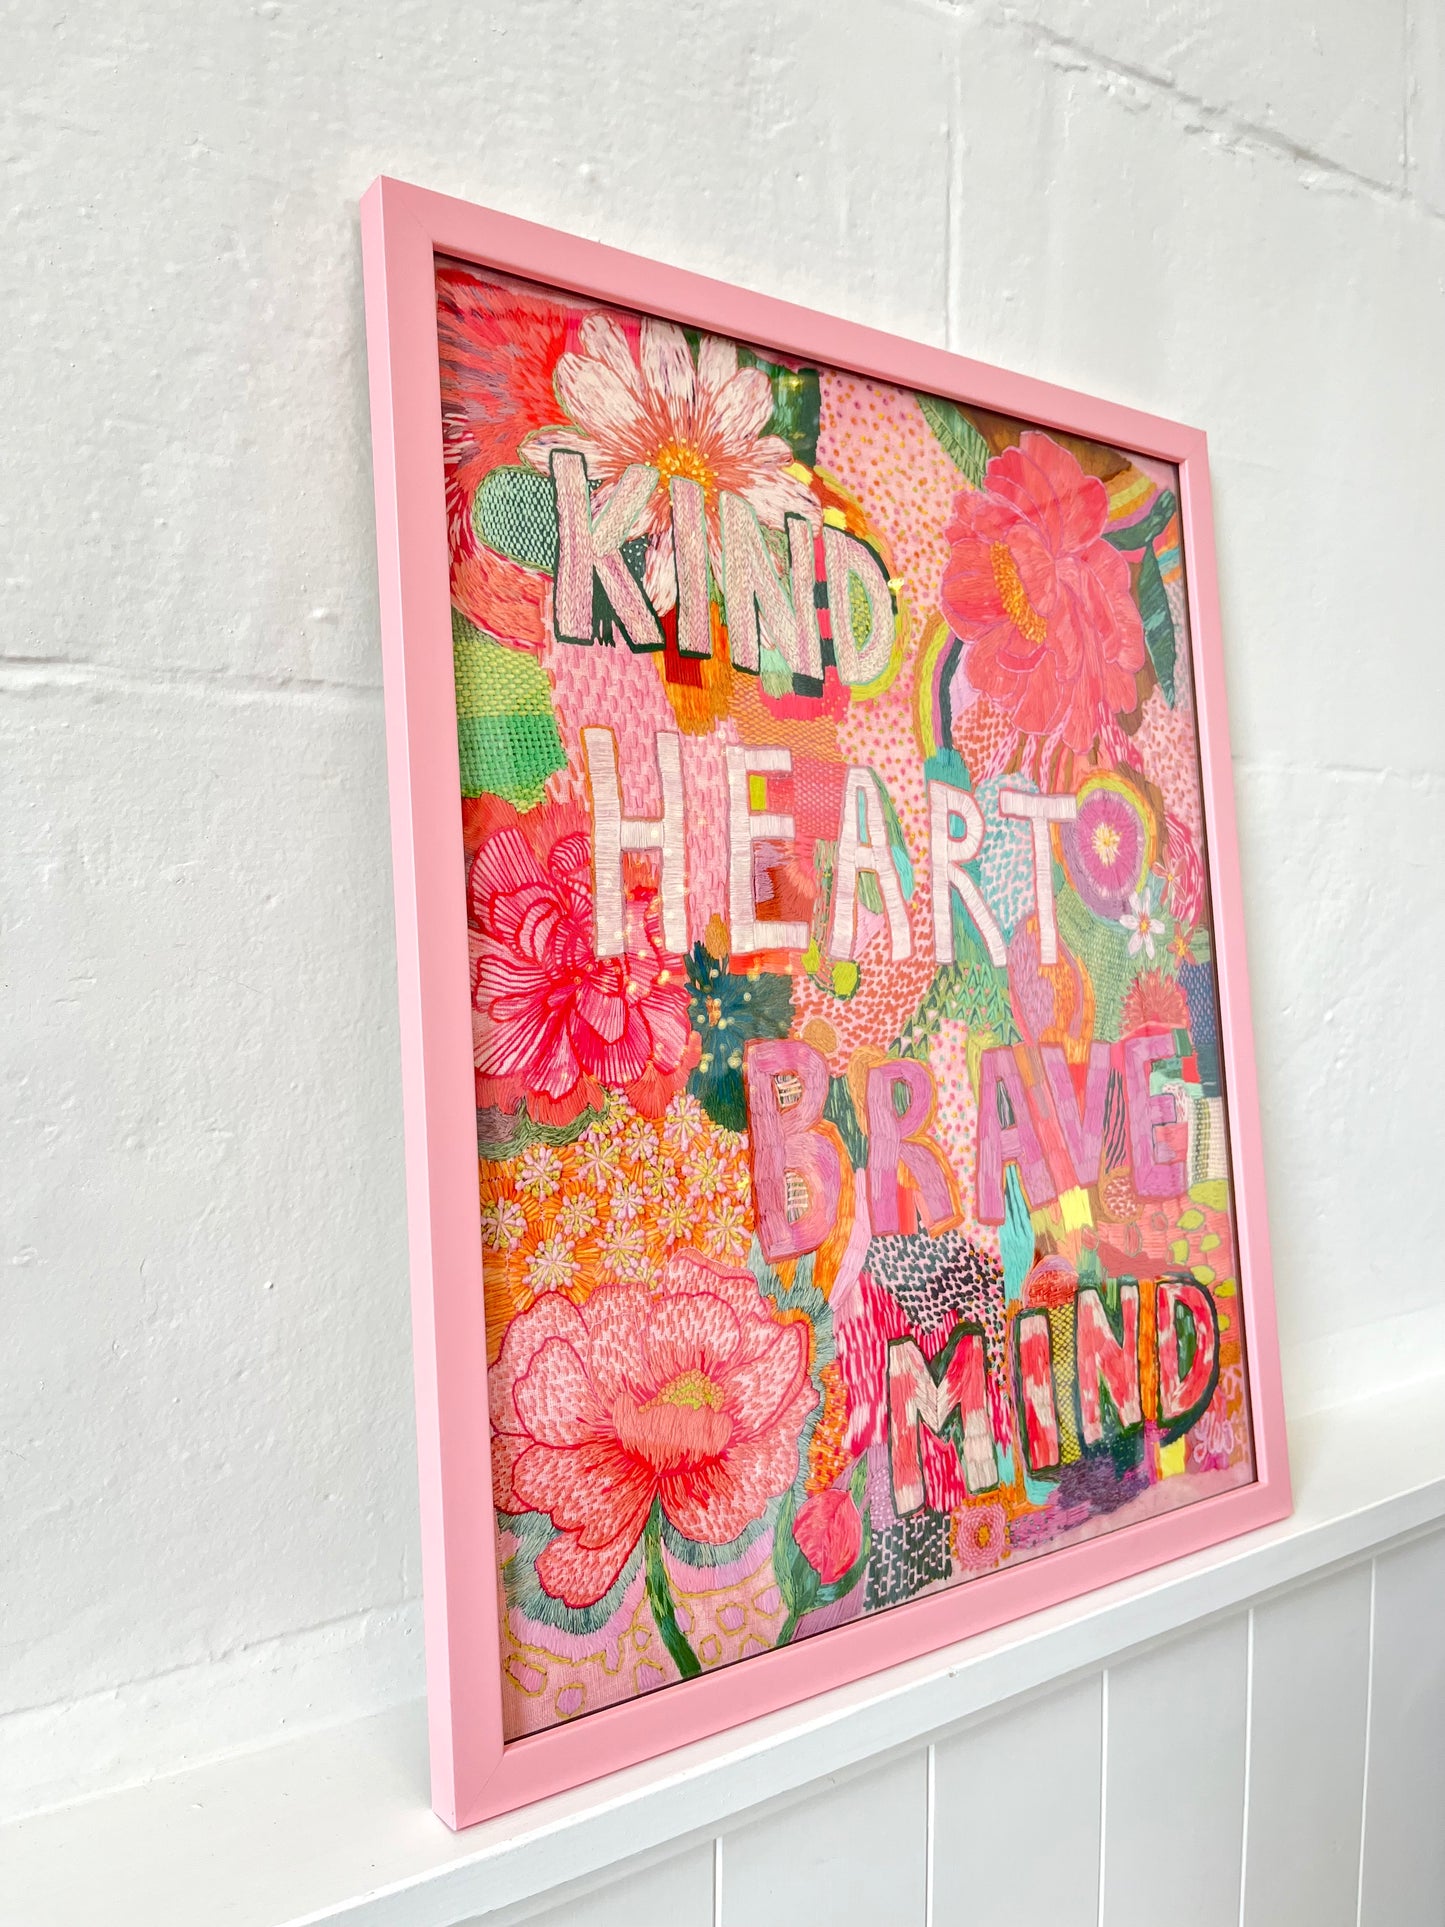 "Kind Heart Brave Mind" Print - 50 x 40cm, Pink Frame